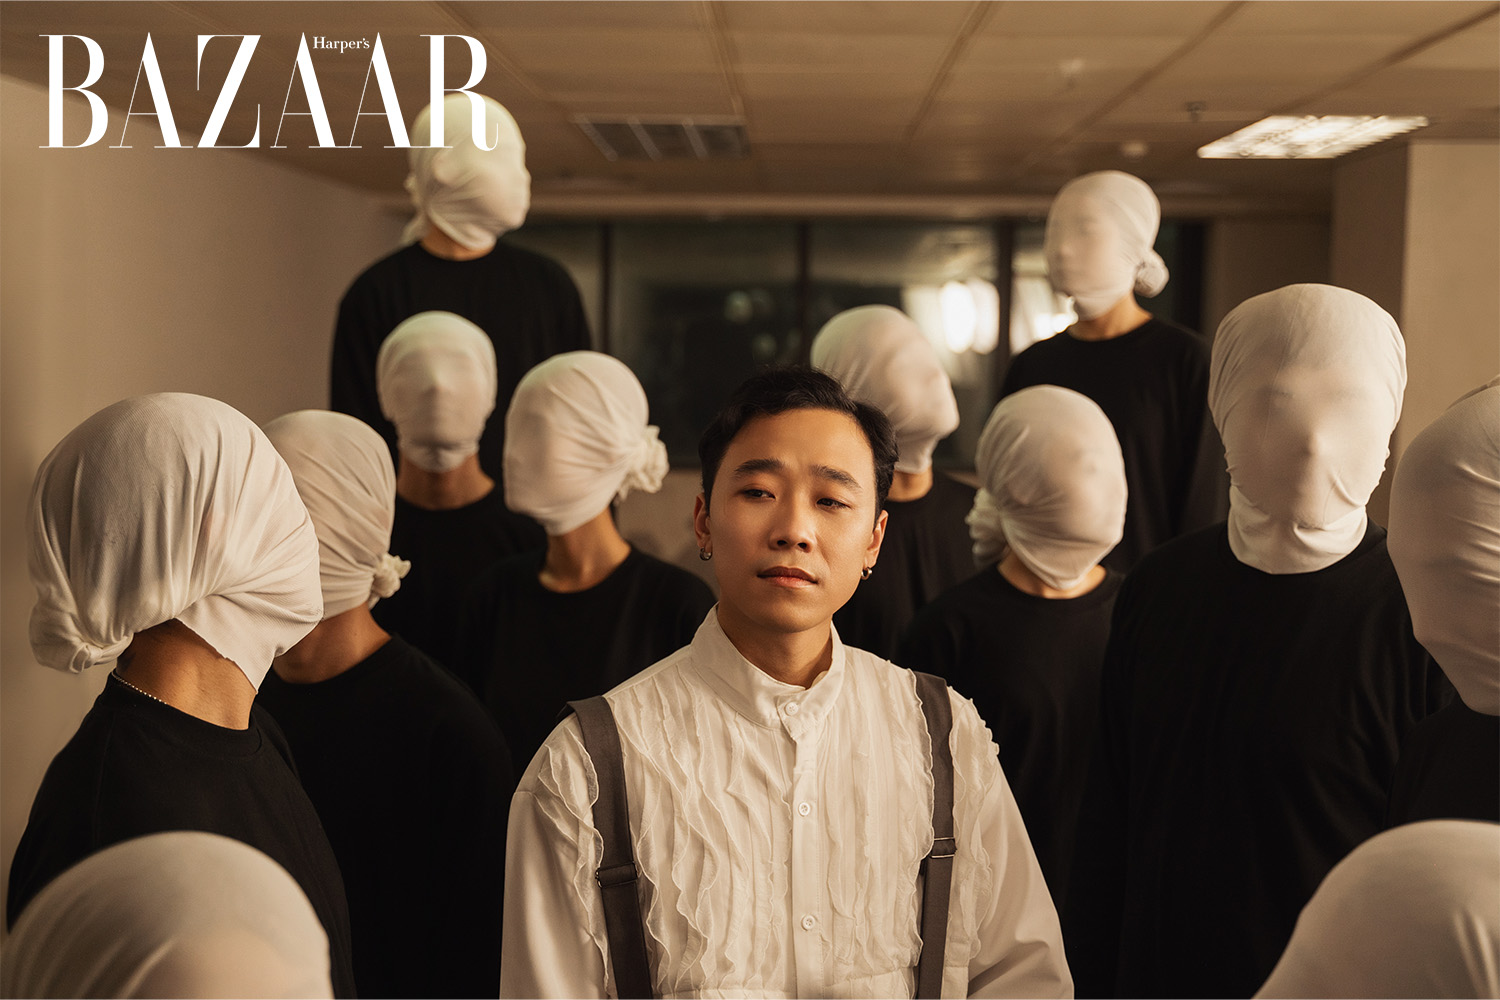 Harper's Bazaar_Madihu ra mắt MV Để Anh Không_02